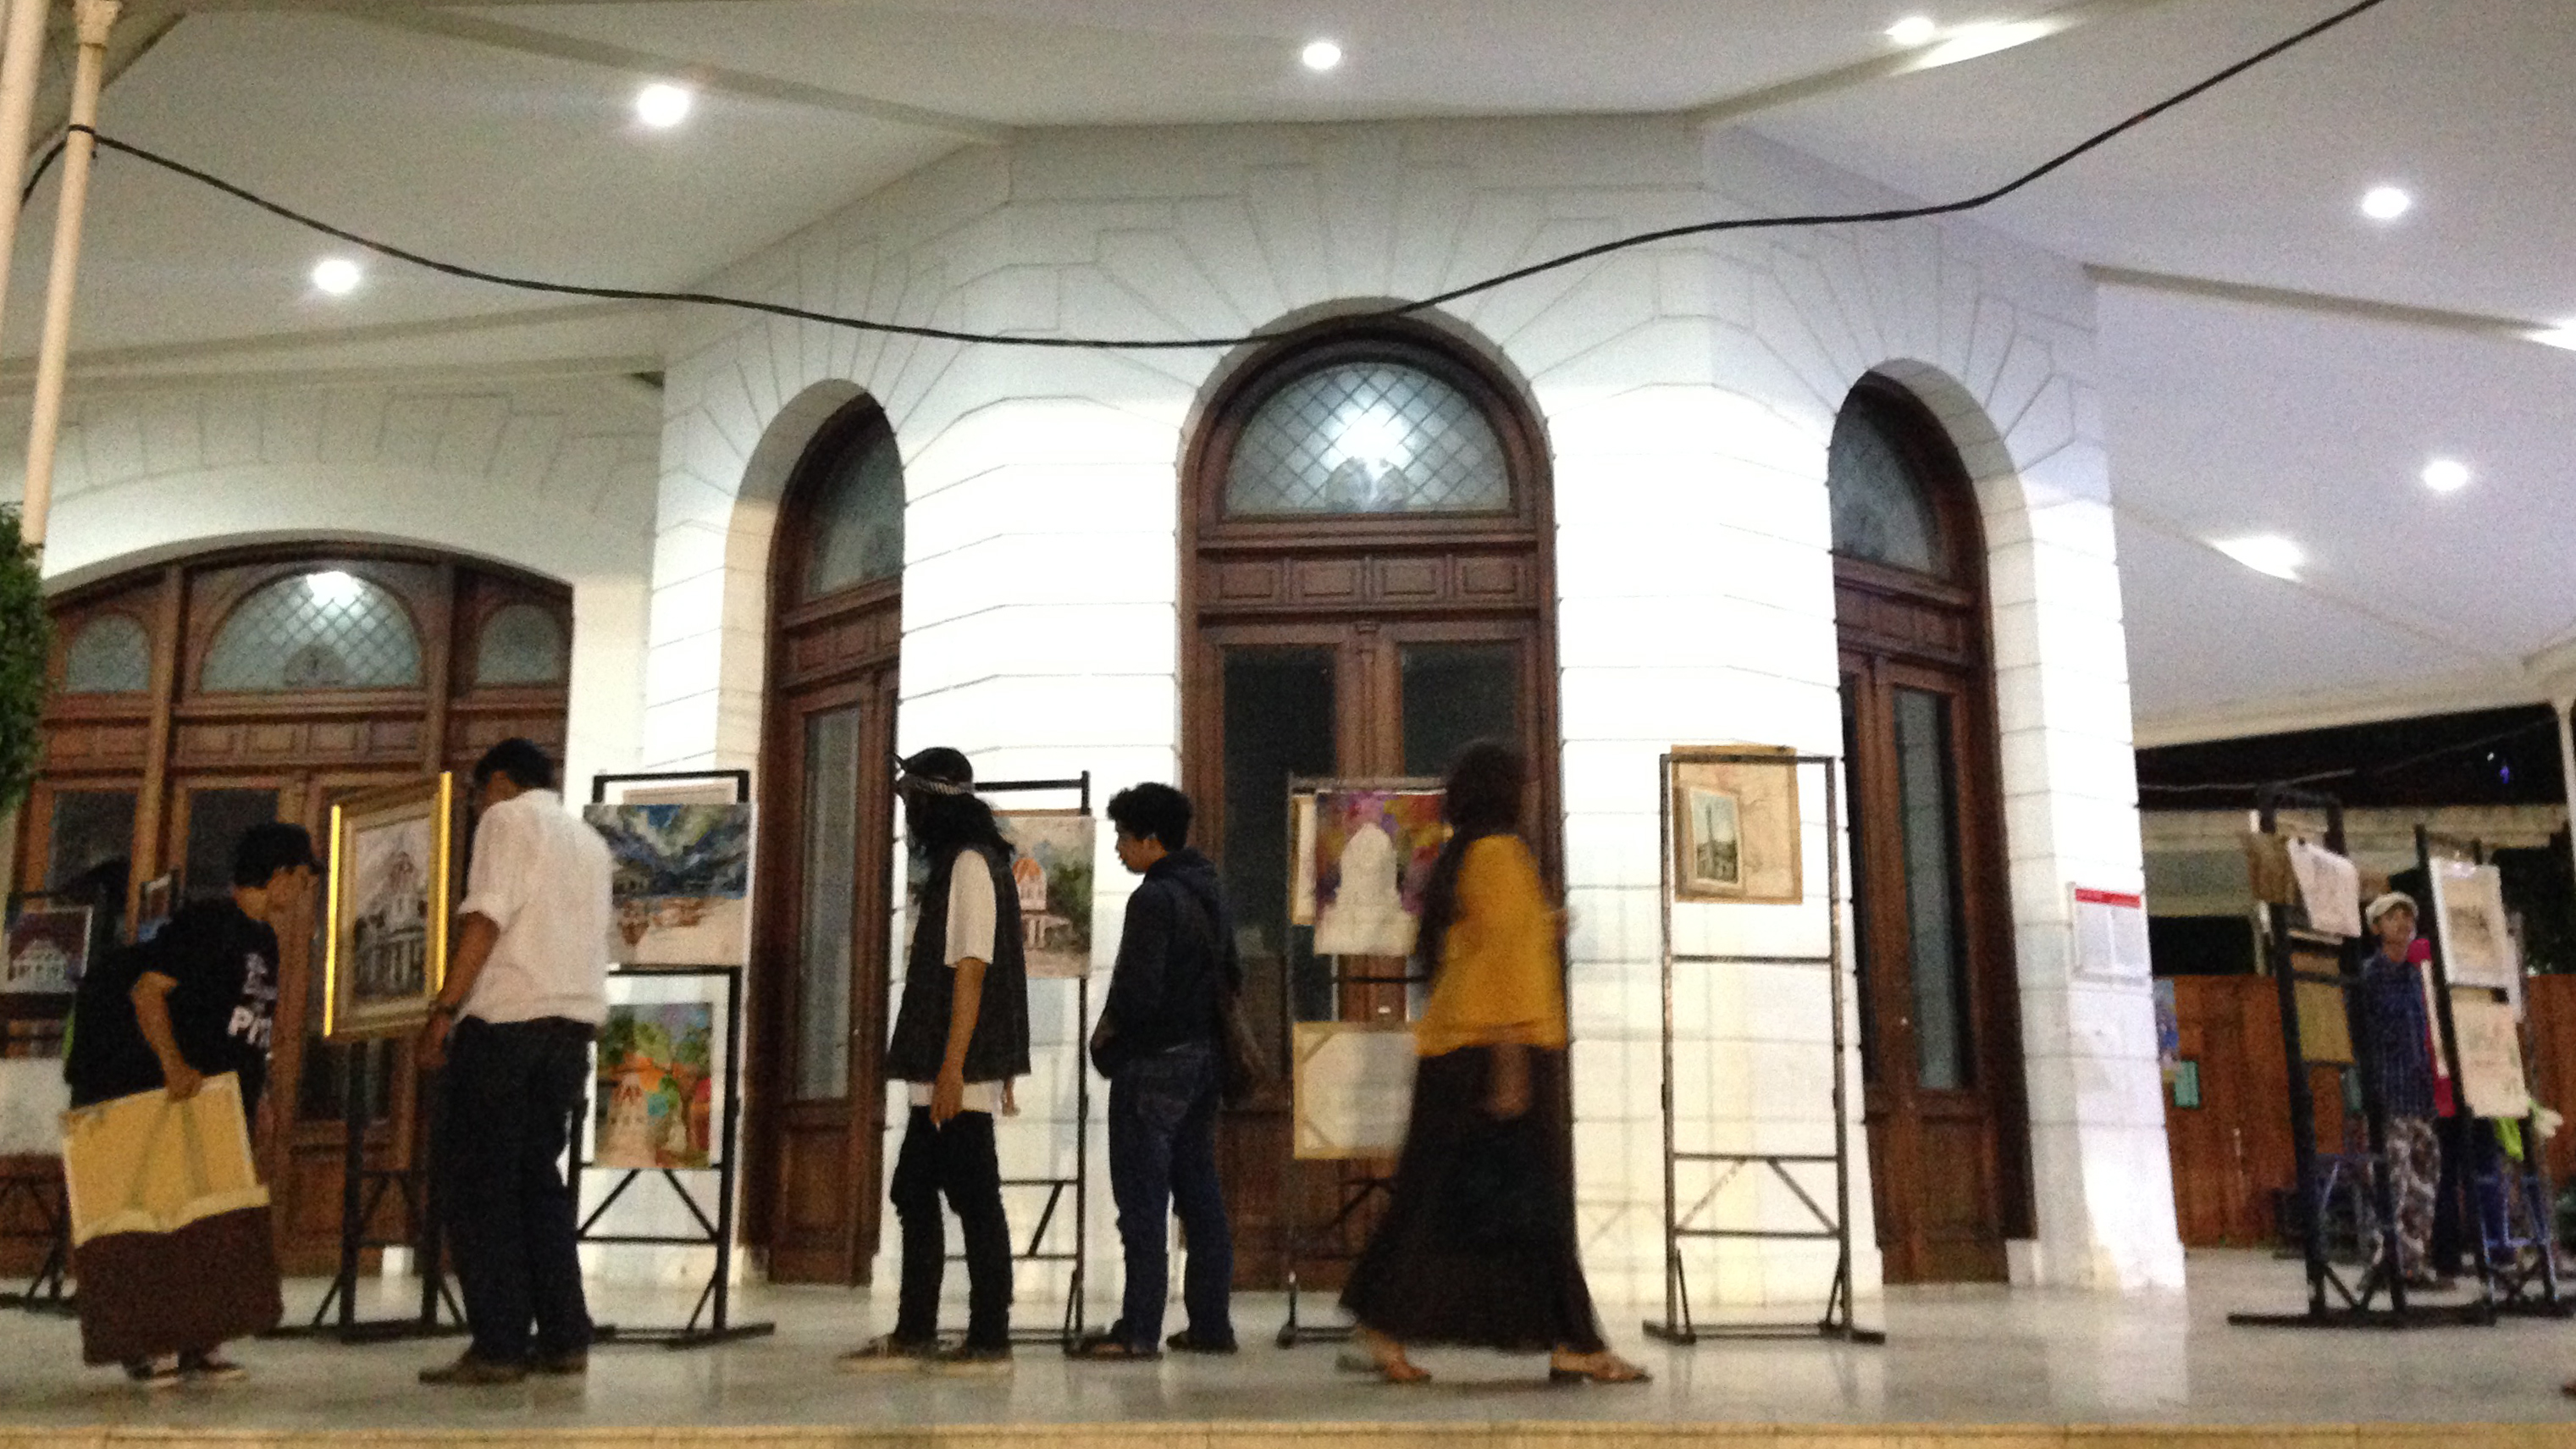 Sebanyak 75 karya lukisan para seniman dipamerkan di selasar Gedung Merah Putih, Balai Pemuda Surabaya, sebagai bentuk protes pembangunan Gedung Baru DPRD Surabaya di lingkungan Balai Pemuda, Sabtu, 2 Desember 2017. (Foto: farid/ngopibareng.id)